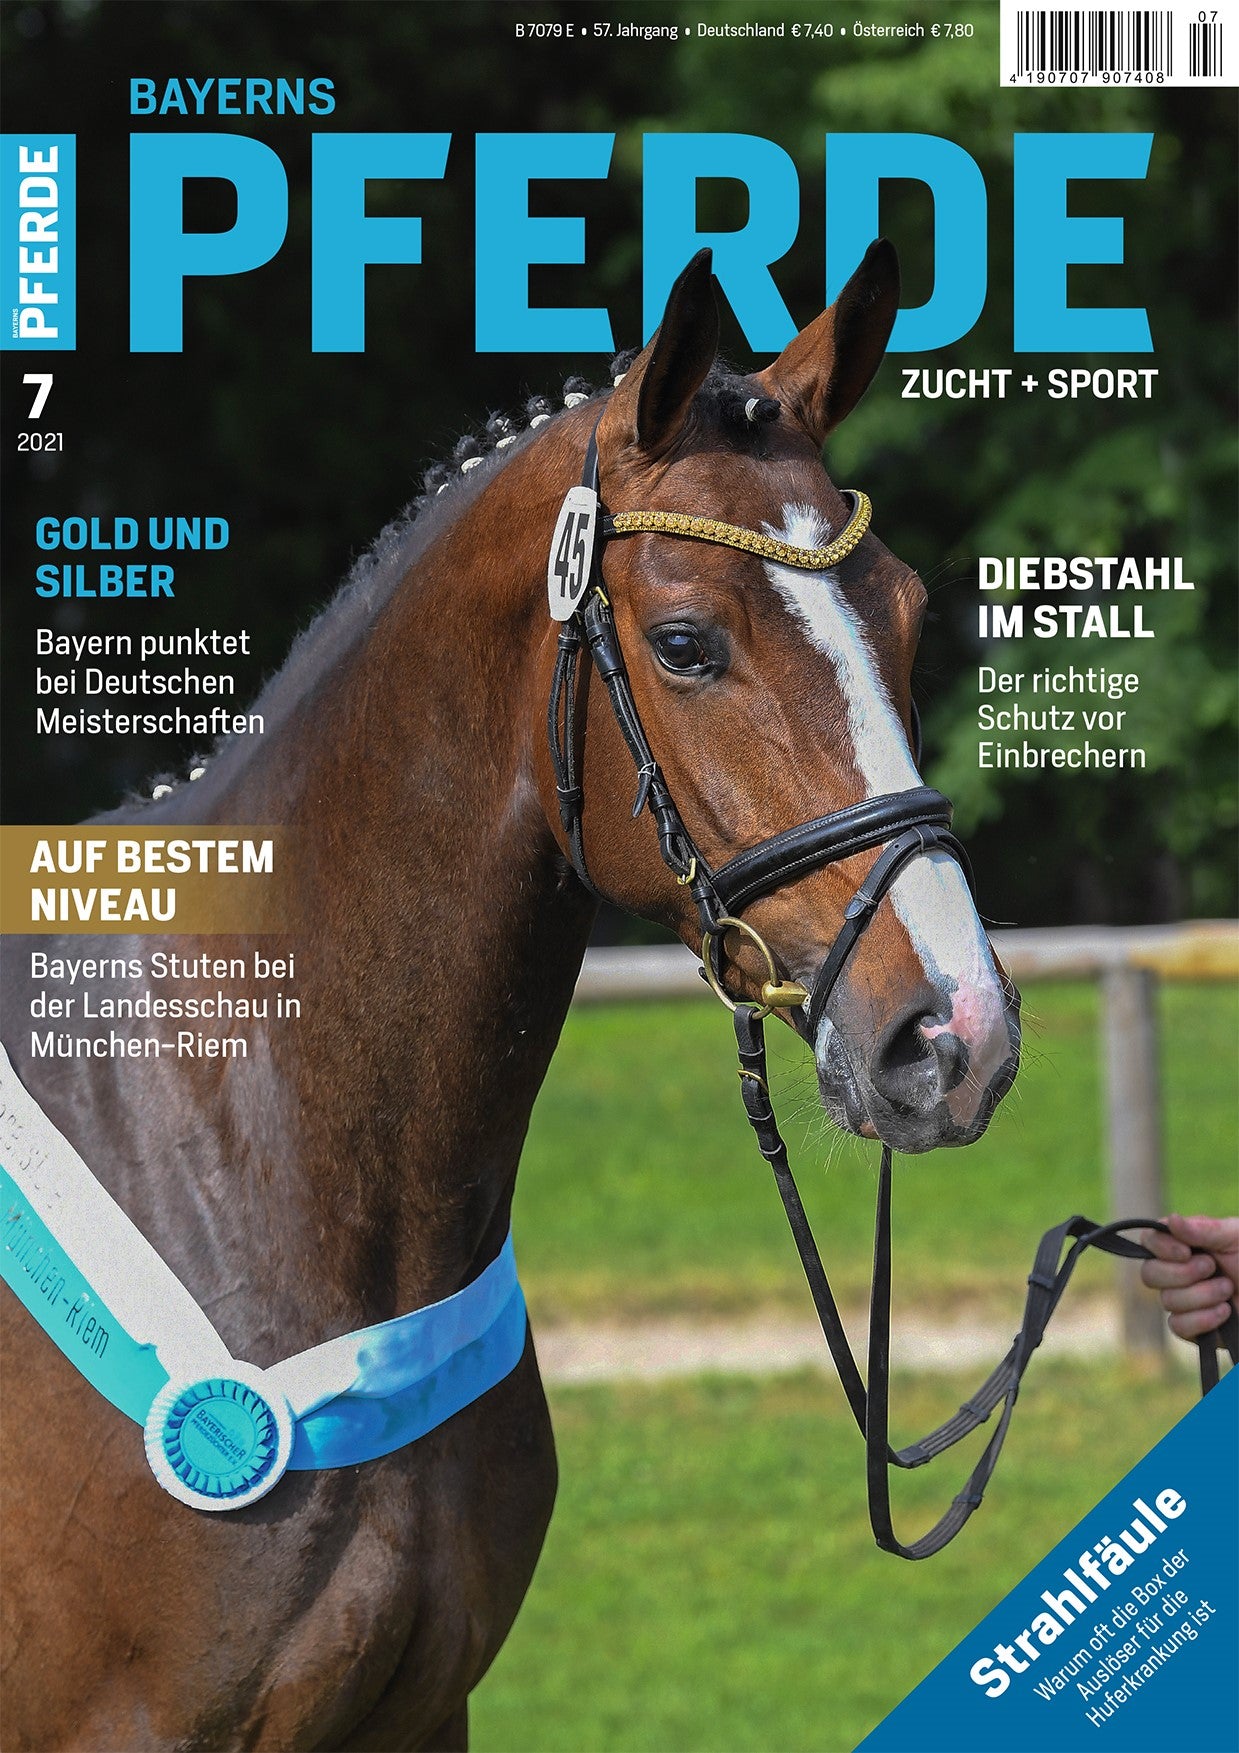 Bayerns Pferde Zucht + Sport Heft 07/2021